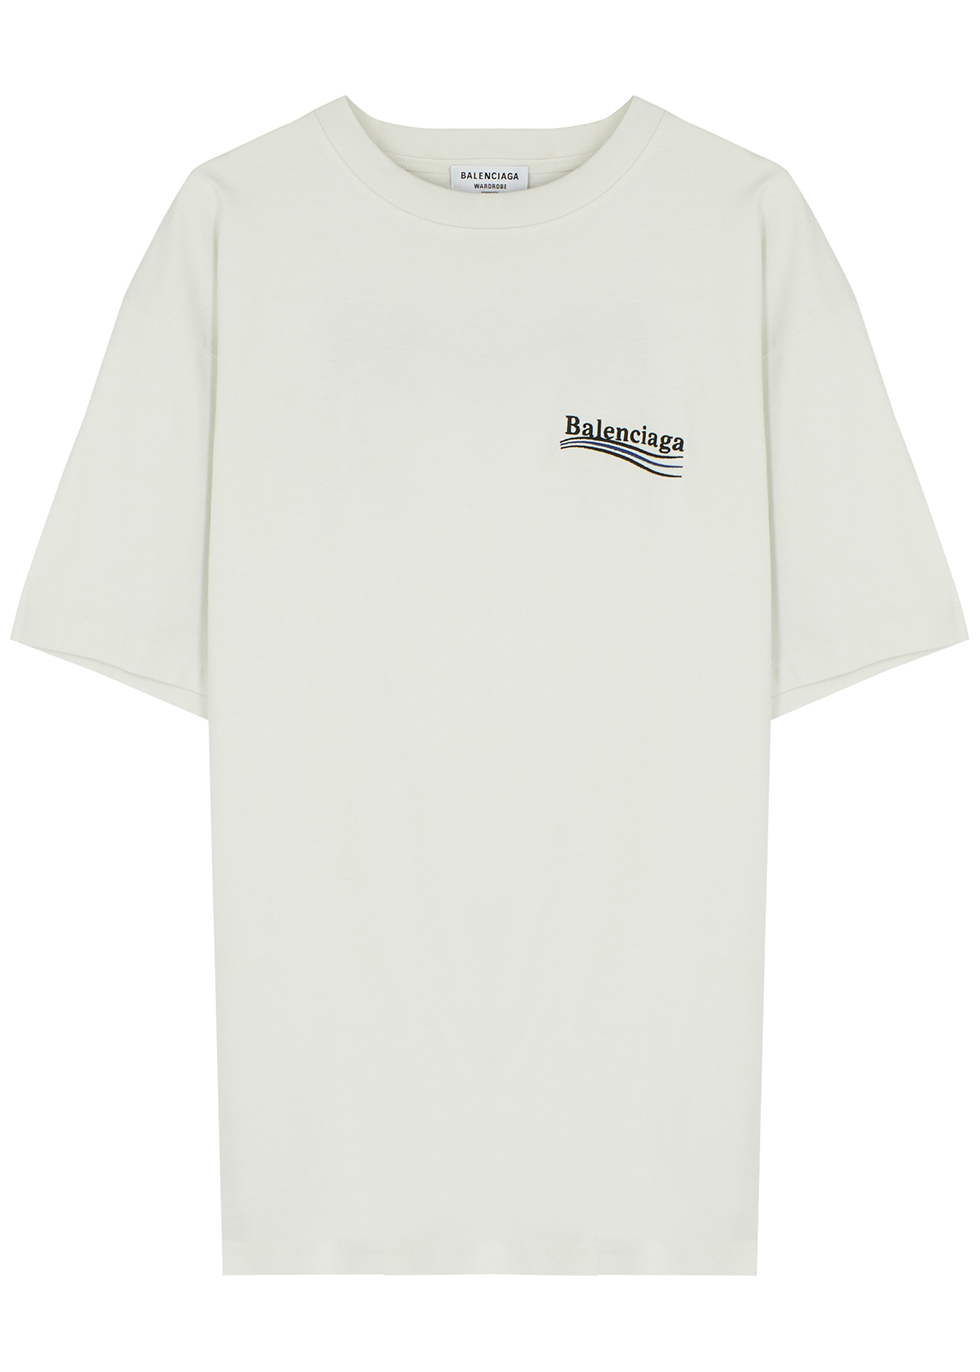 Balenciaga Logoembroidered Tshirt  Mens Clothing  Vitkac